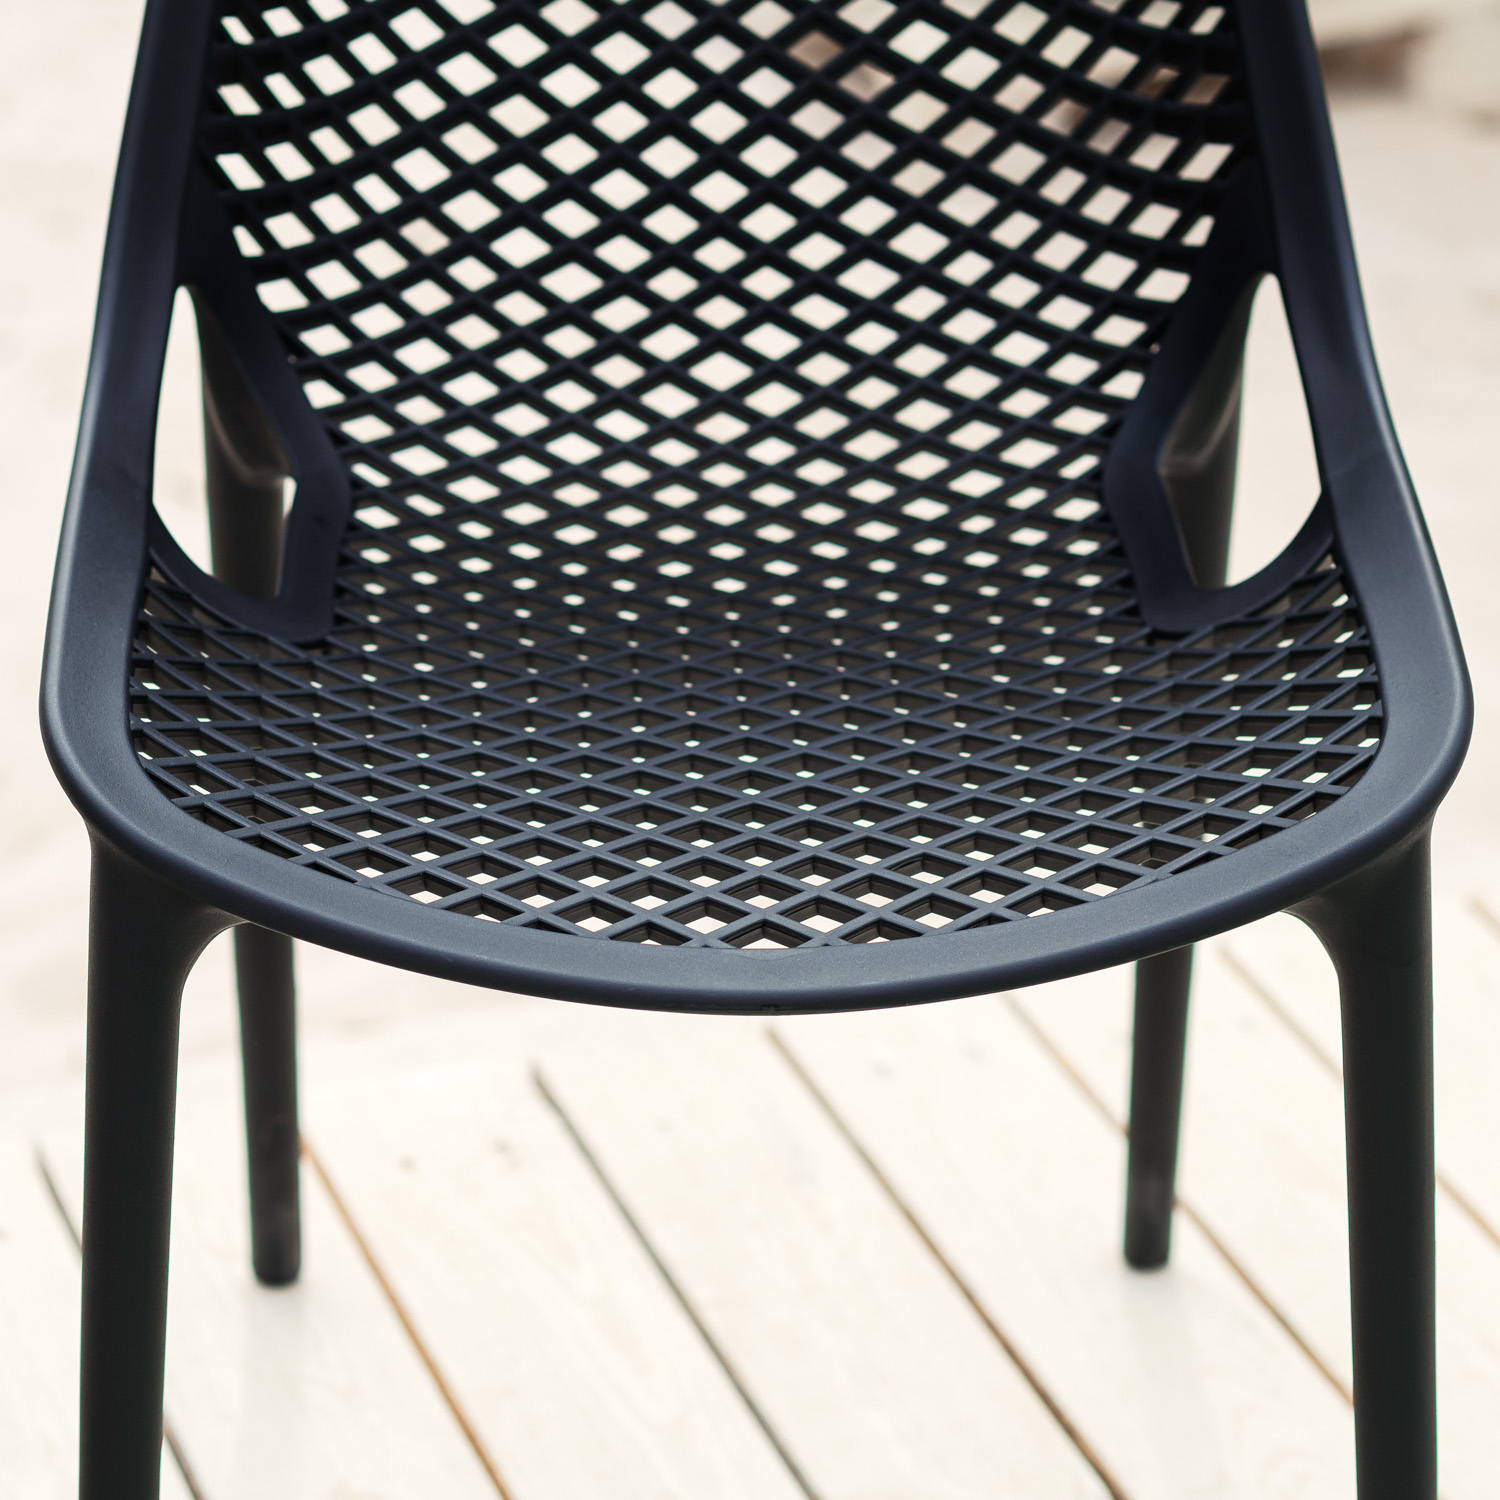 Chaise de jardin Noir Gris Lot de 2, 4 ou 6 Fauteuils de jardin Plastique Chaises exterieur Chaises empilable